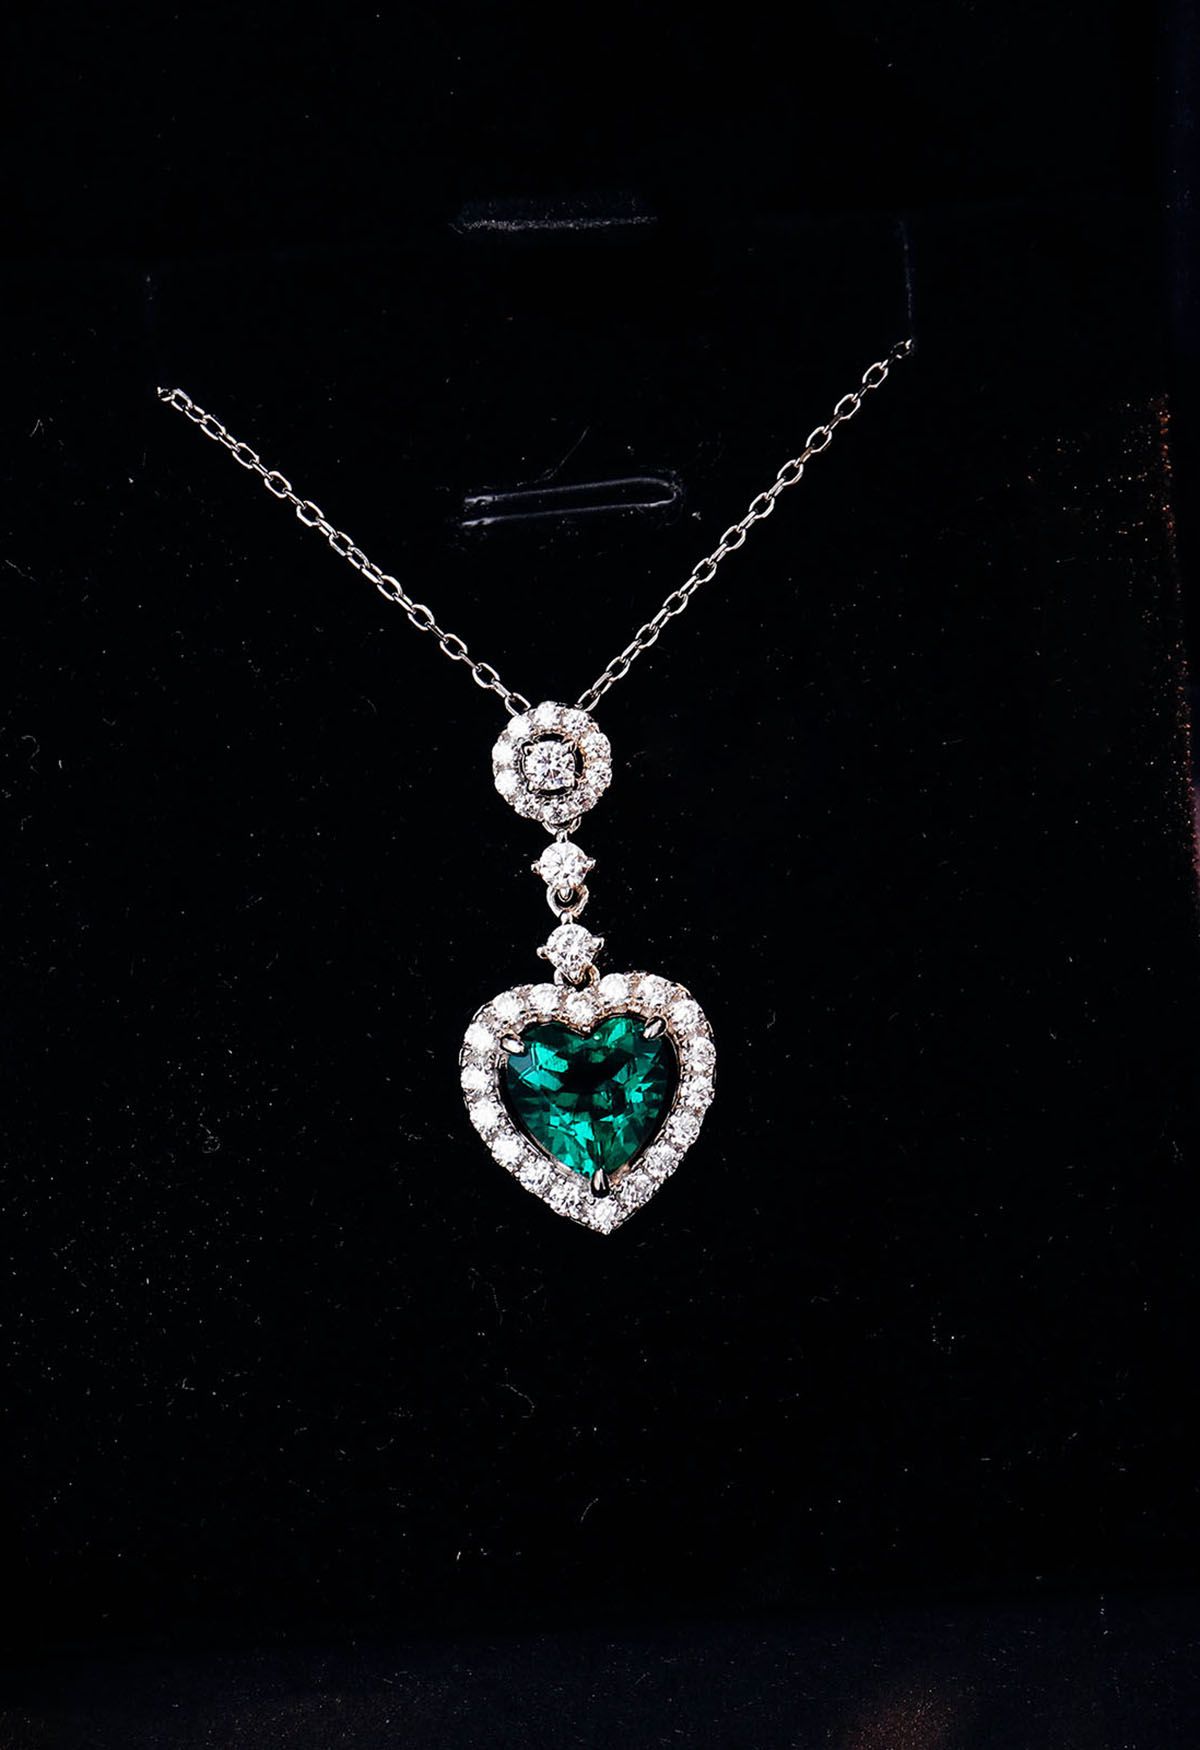 Colar de gema esmeralda em formato de coração